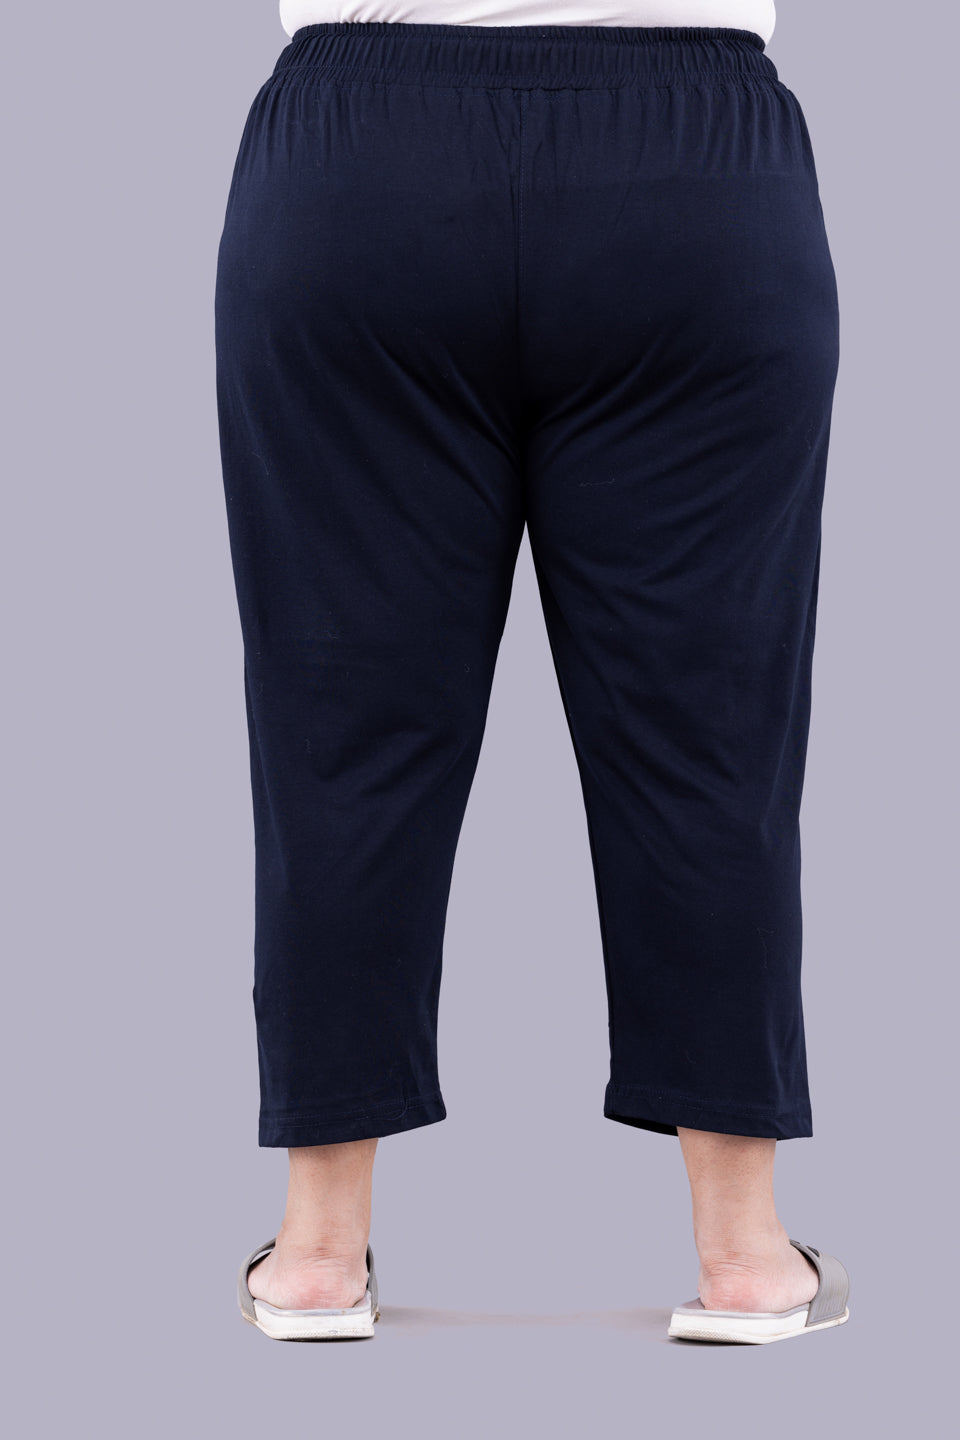 Cotton Capris For Women - Half Pants Pack of 2 (Purple & Navy Blue)